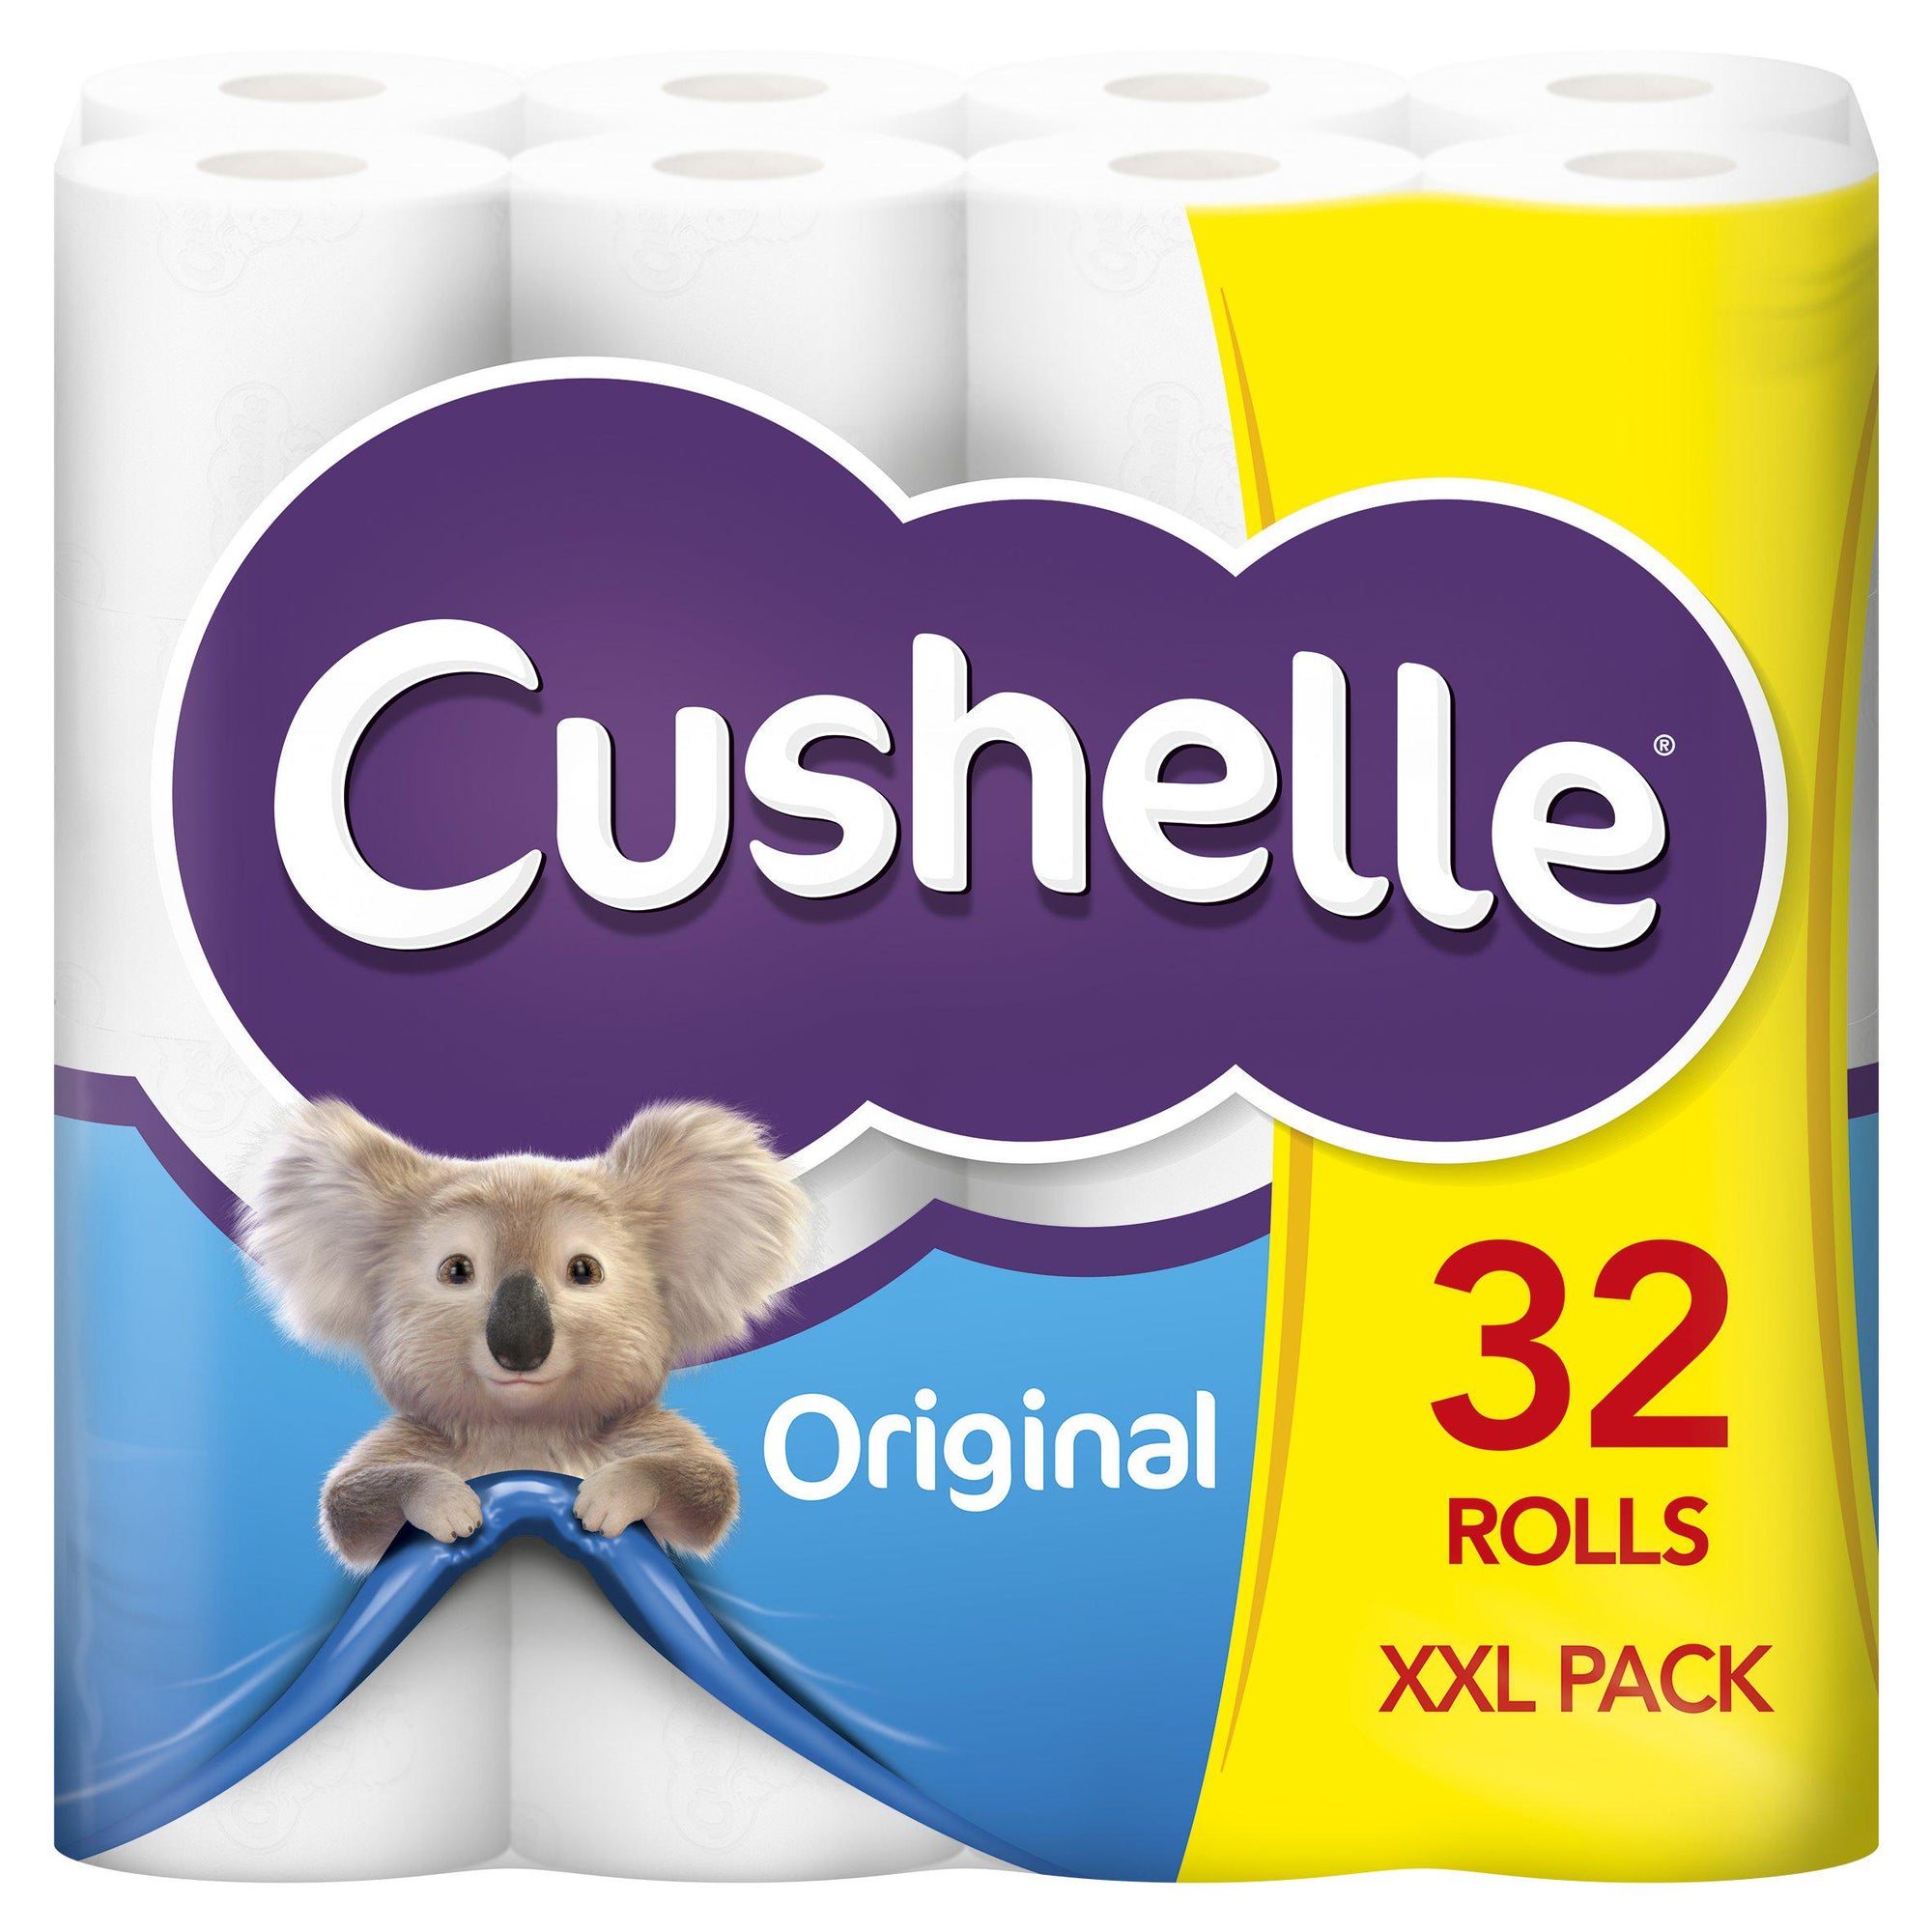 Cushelle Toilet Roll (32)*